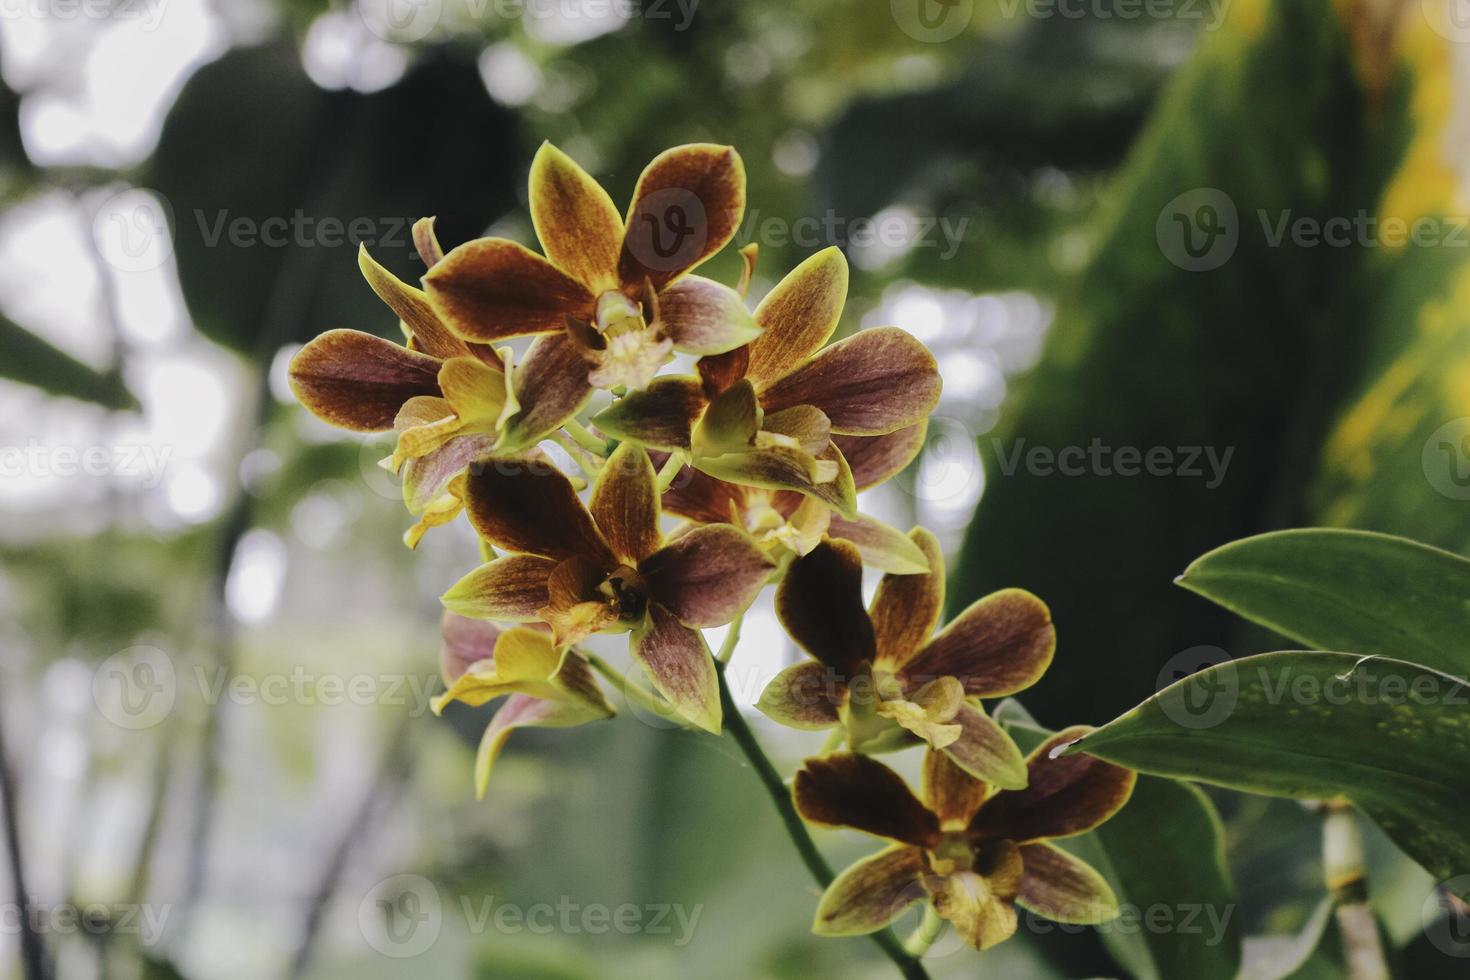 orquídeas catasetum, uno de los híbridos de orquídeas más singulares.  6481417 Foto de stock en Vecteezy